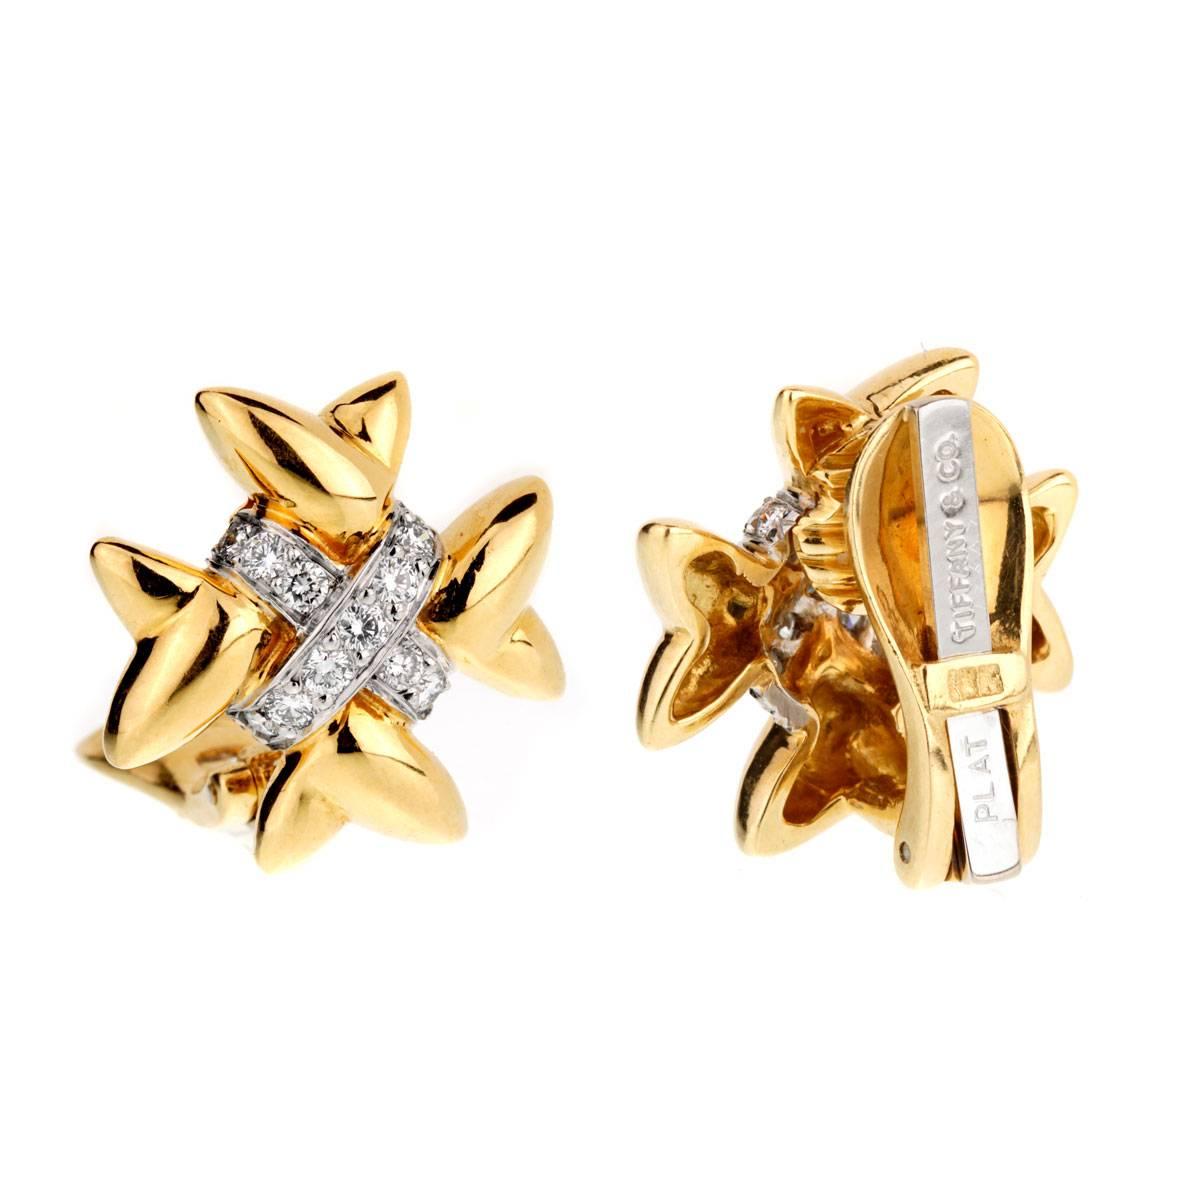 Ein atemberaubendes Paar Diamantohrringe von Tiffany & Co aus 18 Karat Weißgold. Die Diamanten sind in glänzendem Platin gefasst.